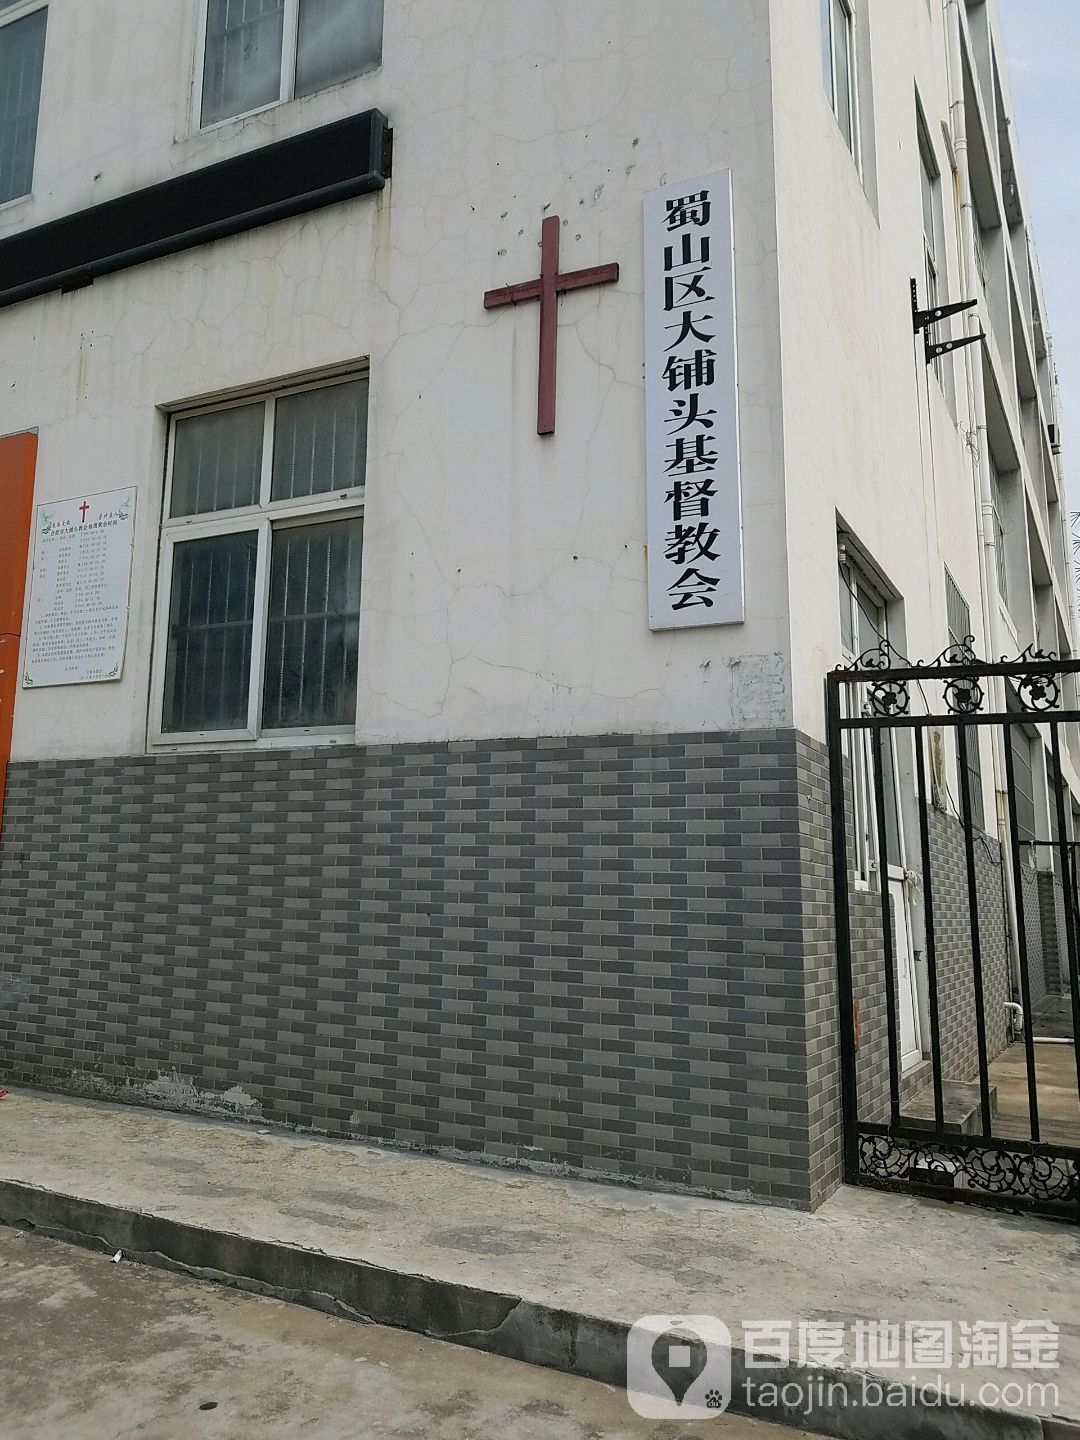 蜀山区大铺头基督教会